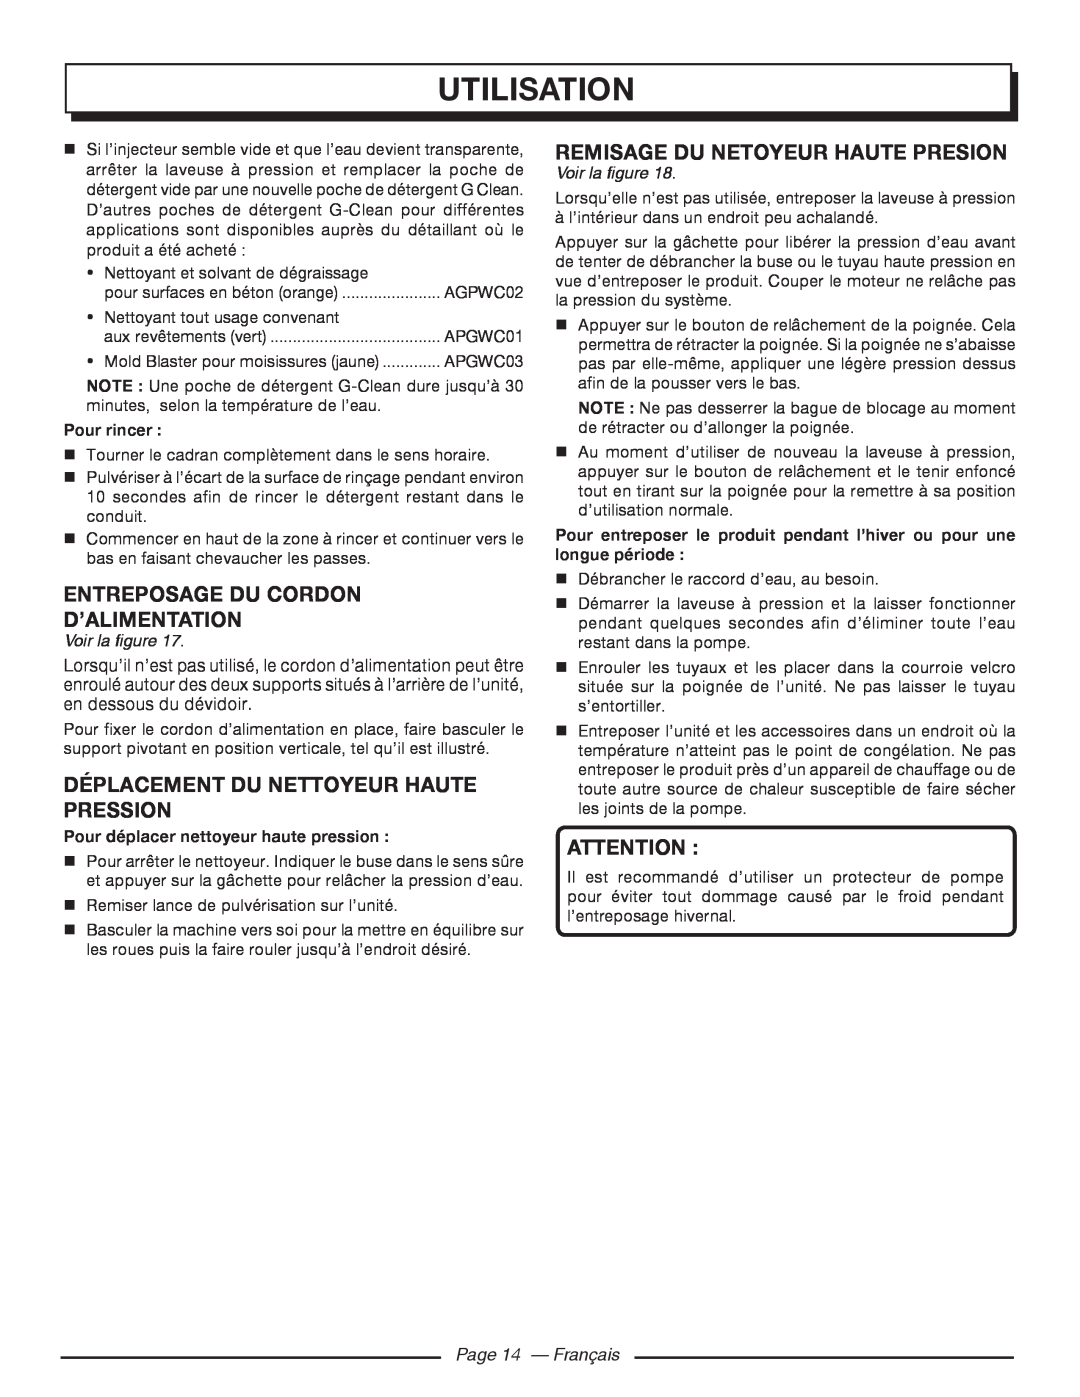 Homelite UT80720 Entreposage Du Cordon D’Alimentation, Déplacement Du Nettoyeur Haute Pression, Page 14 - Français 